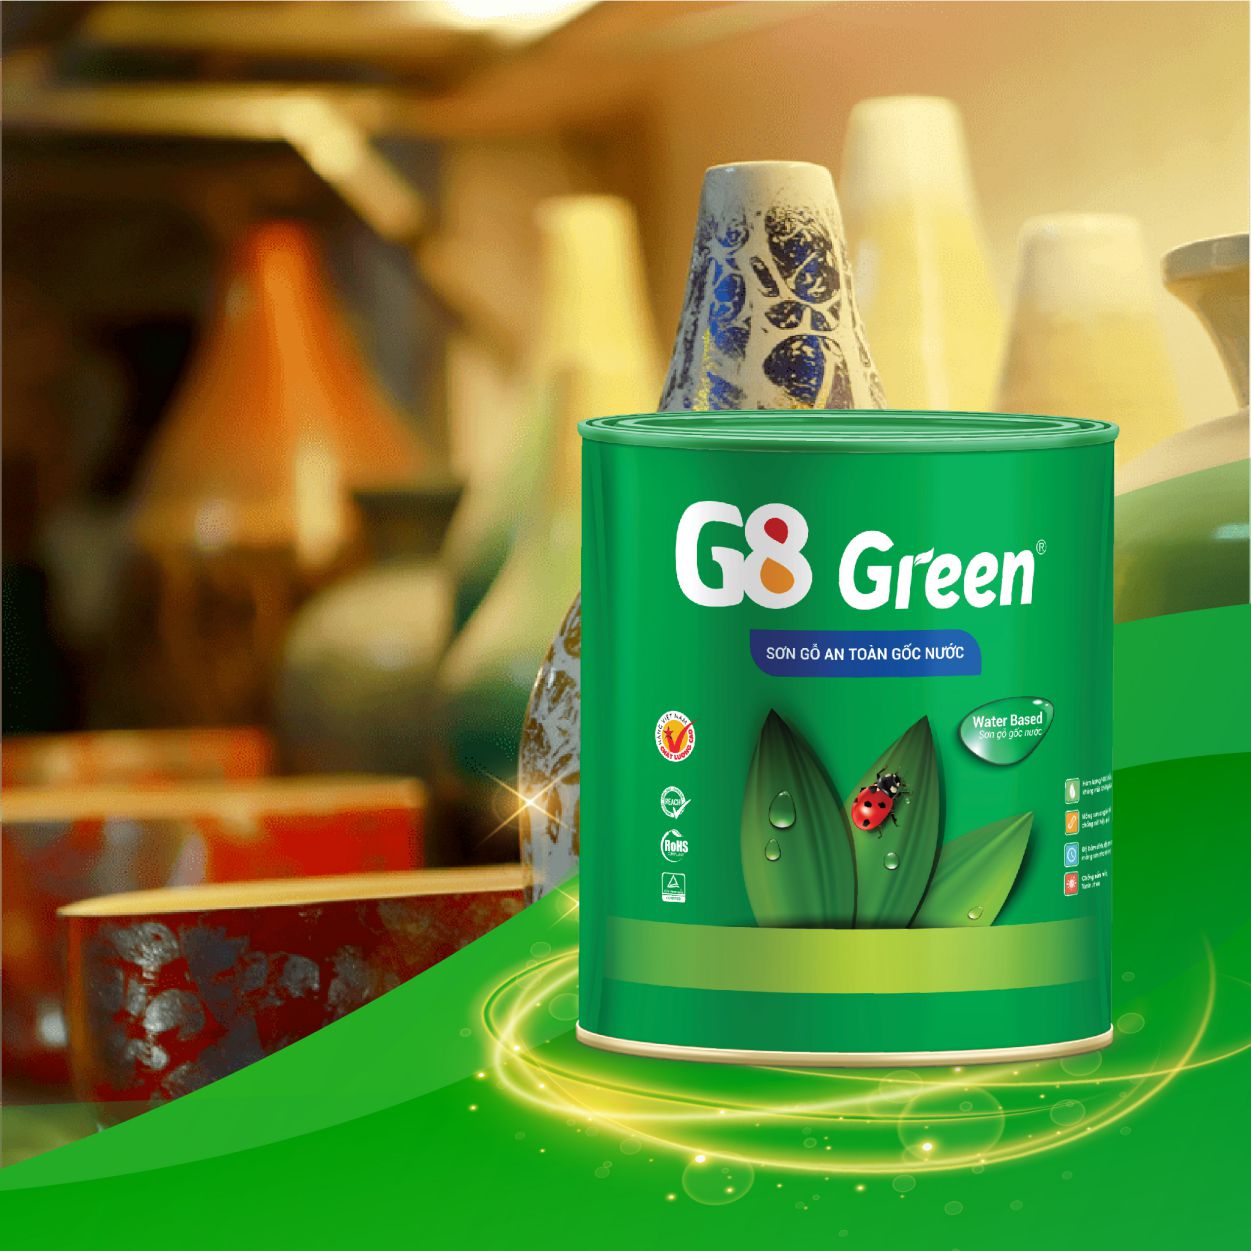 Sơn gốc nước G8 Green